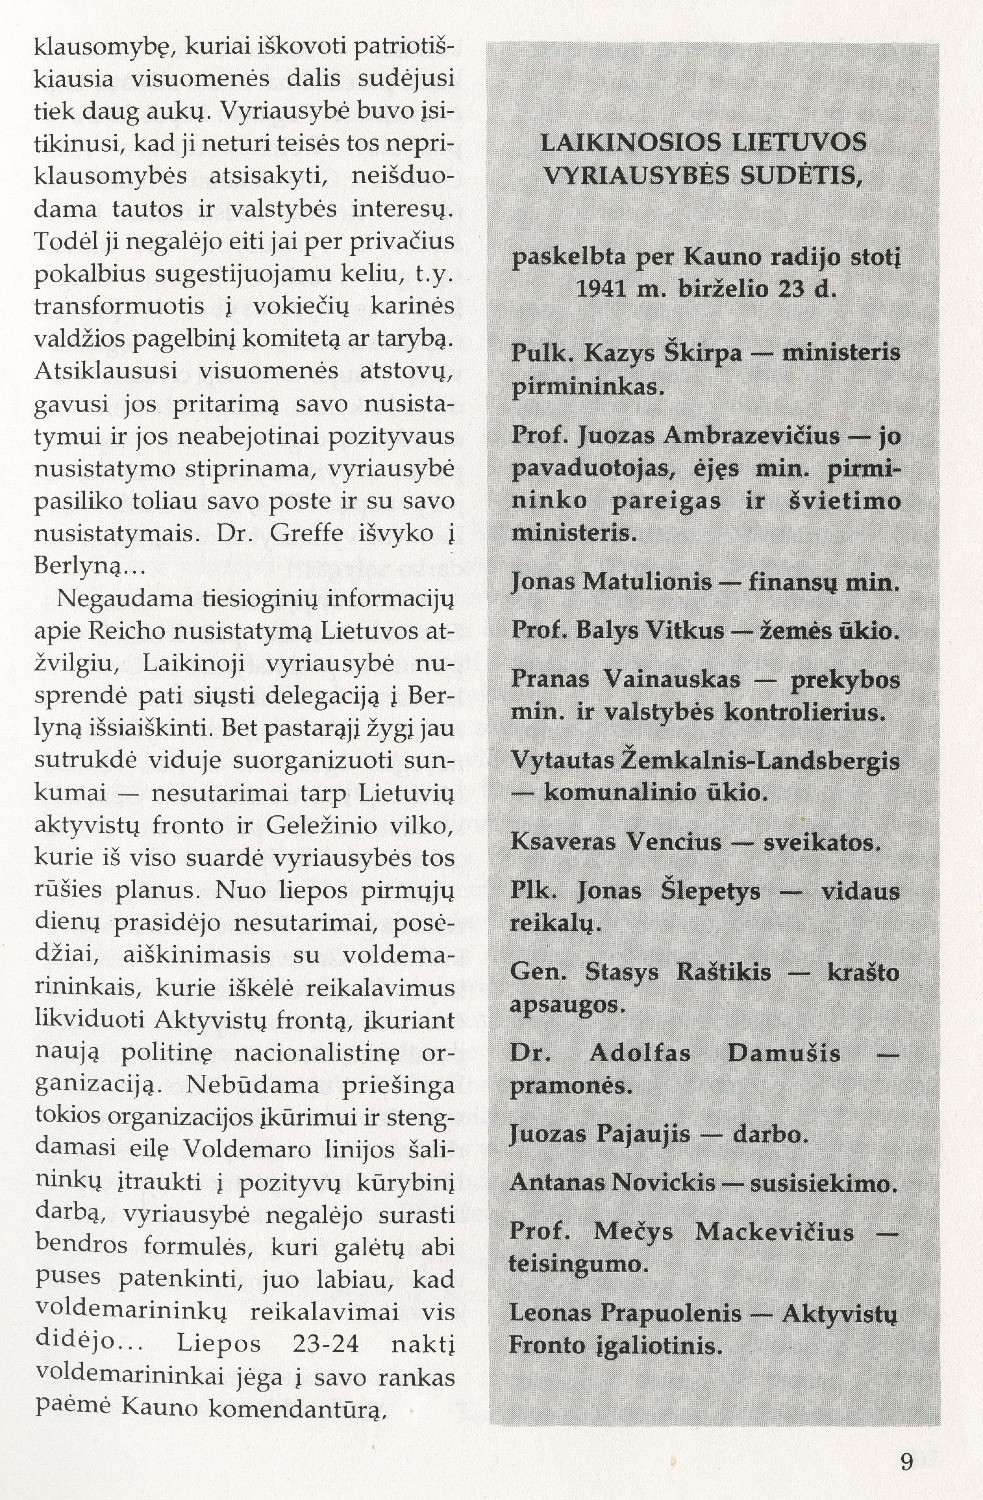 Prieš 45 metus: [apie Laikinosios vyriausybės veiklą: Ištrauka iš Lietuvos Ministerių kabineto 1941 m. rugpjūčio 5 d. paskutiniojo posėdžio protokolo Nr. 35; Laikinosios vyriausybės sudėtis; Juozo Ambrazevičiaus laiško gen. Komisarui Dr. von Rentelnui vertimas] // Į laisvę. – 1986, Nr. 97, p. 6–11.